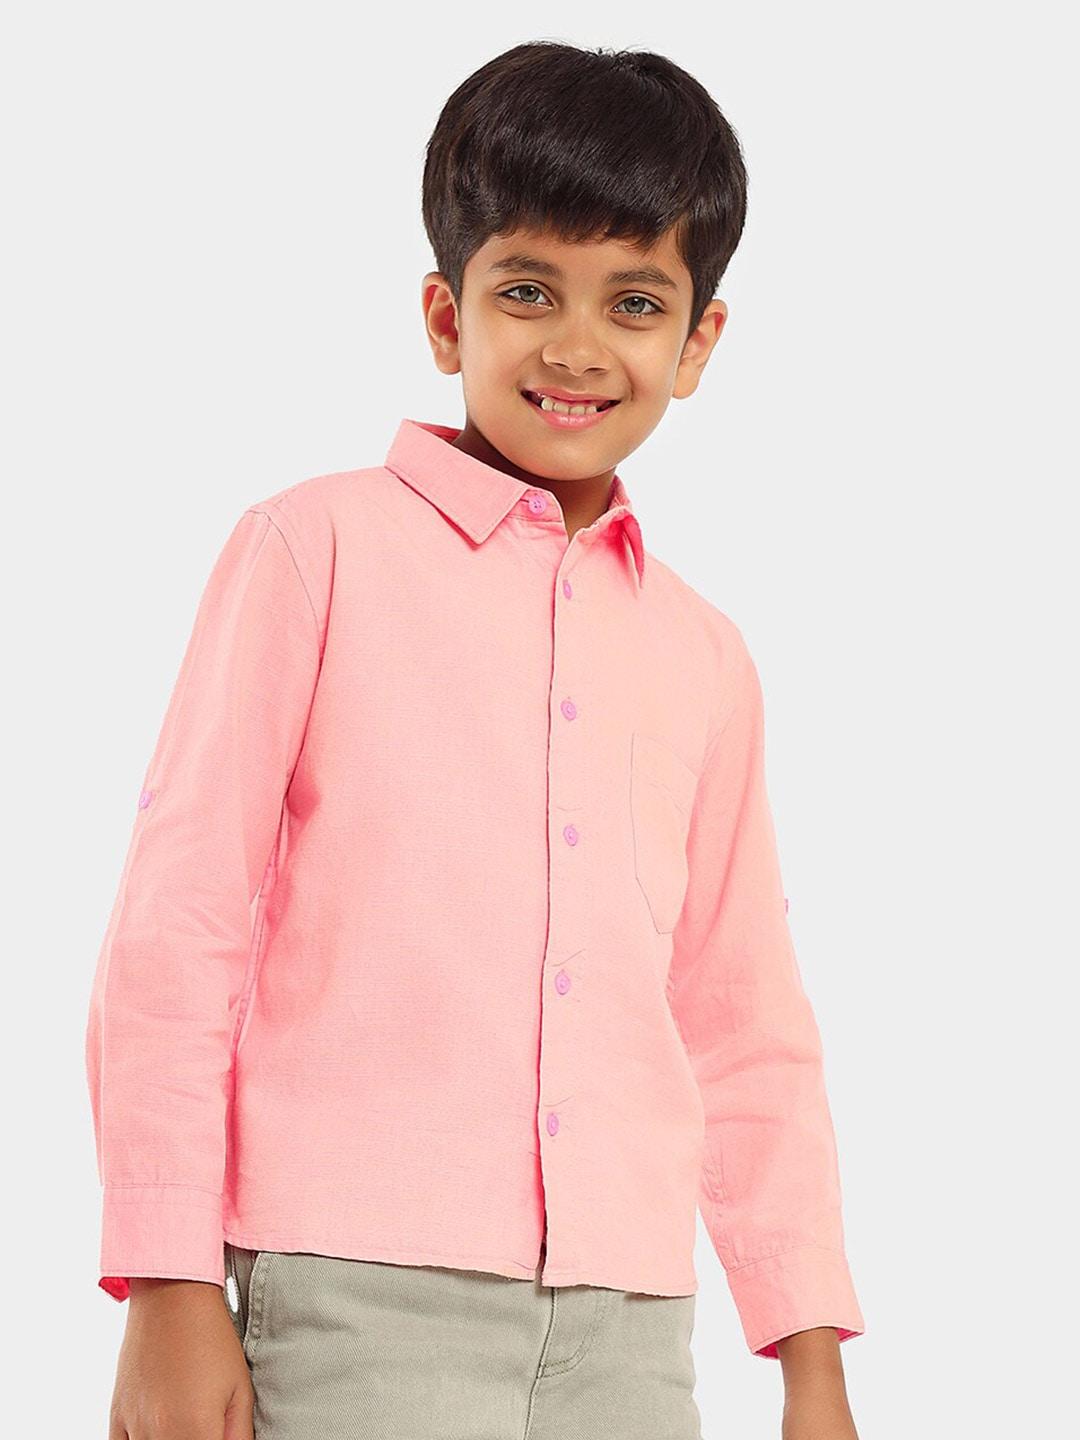 lilpicks boys smart opaque regular fit cotton casual shirt